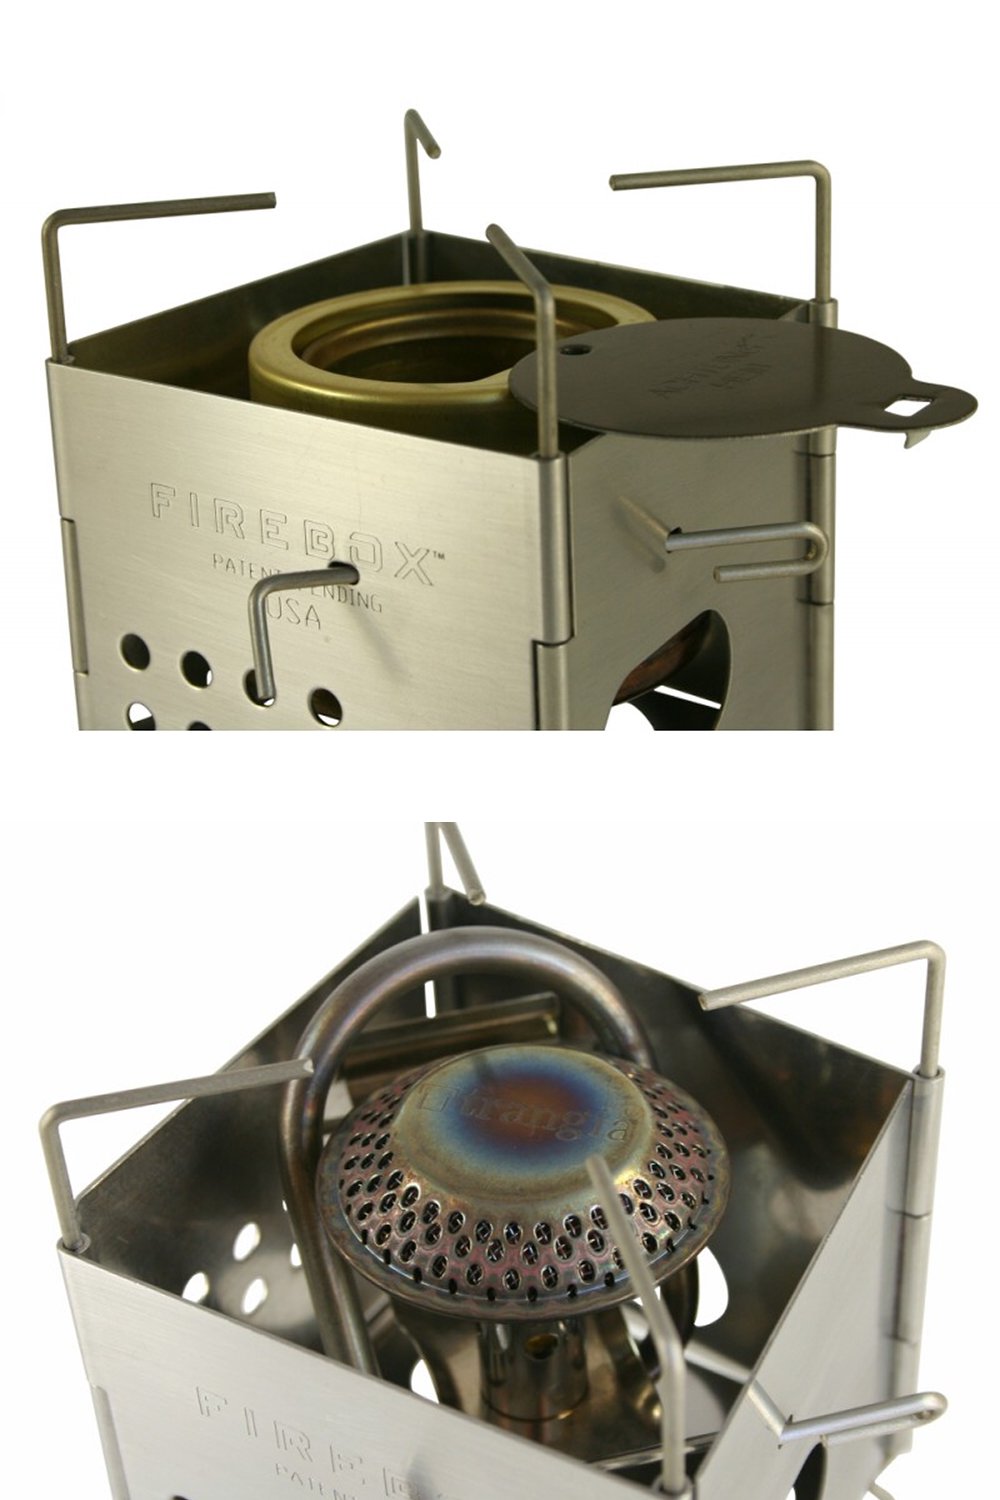 ファイヤーボックス ナノボックスセット ステンレス キャンプストーブ バーベキューコンロ FIREBOX Nano Stove SET Stainless Steel firebox-02